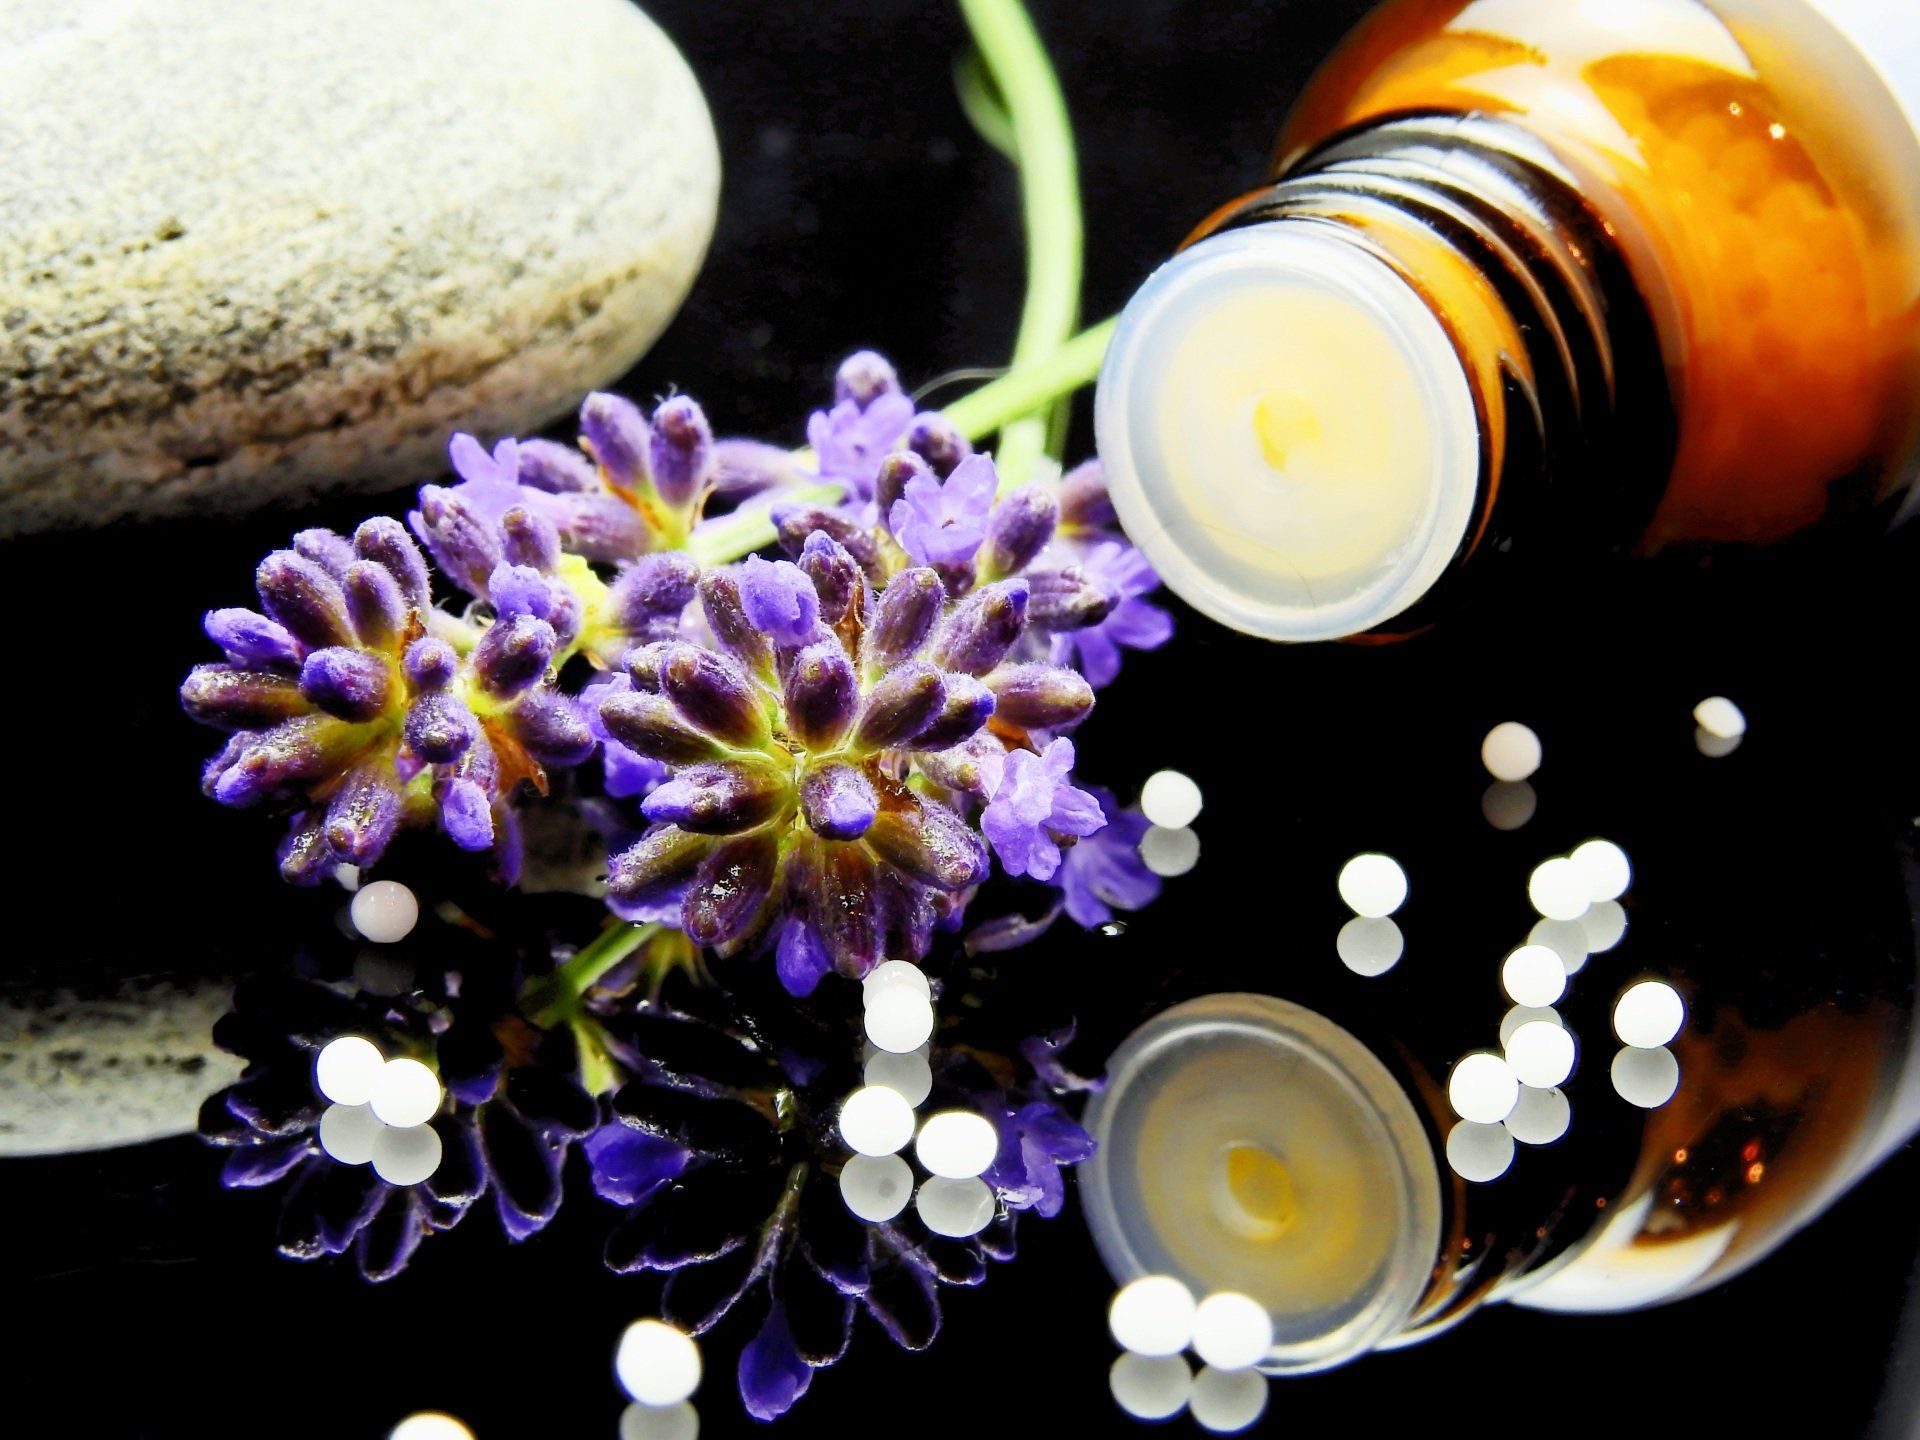 Aromatherapy, scrubs, and stones